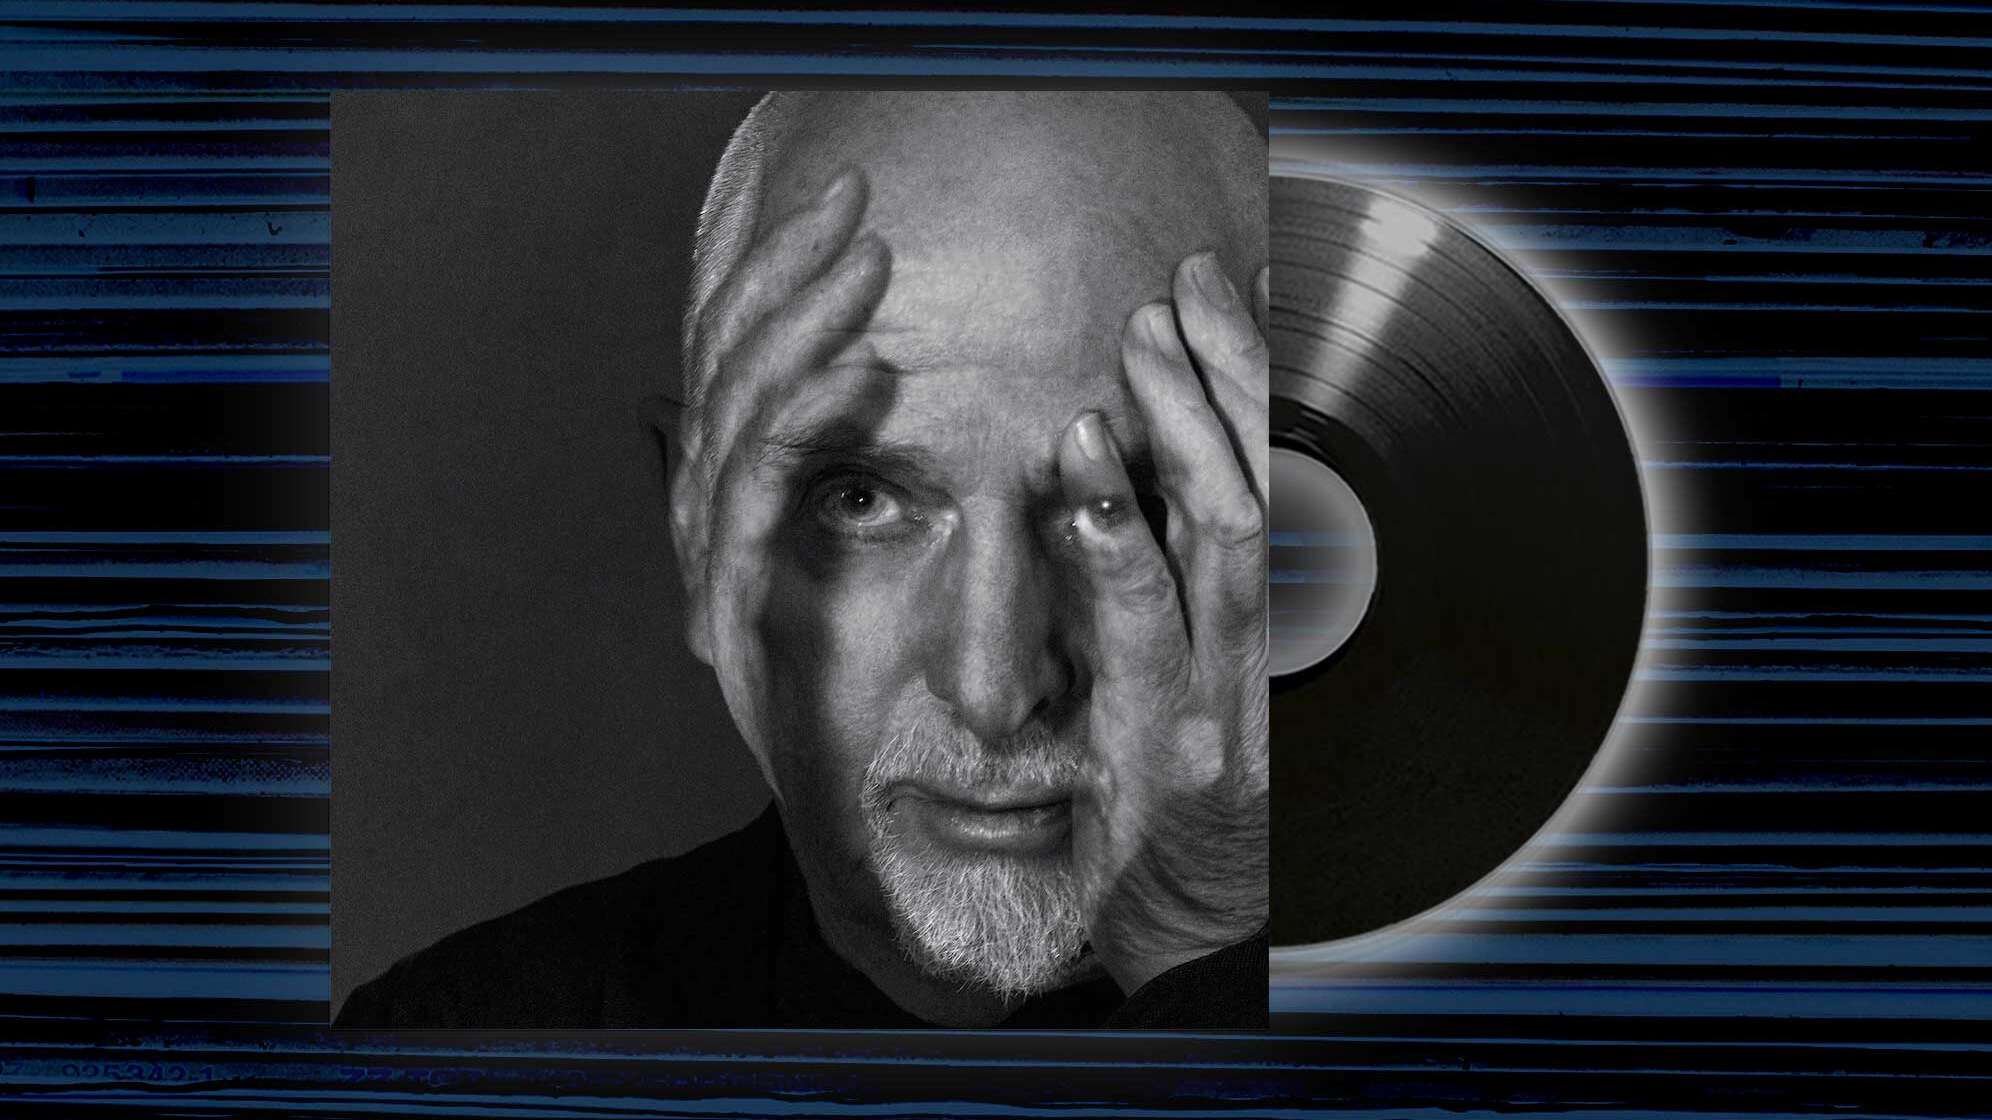 Das Albumcover von Peter Gabriel zu i/o